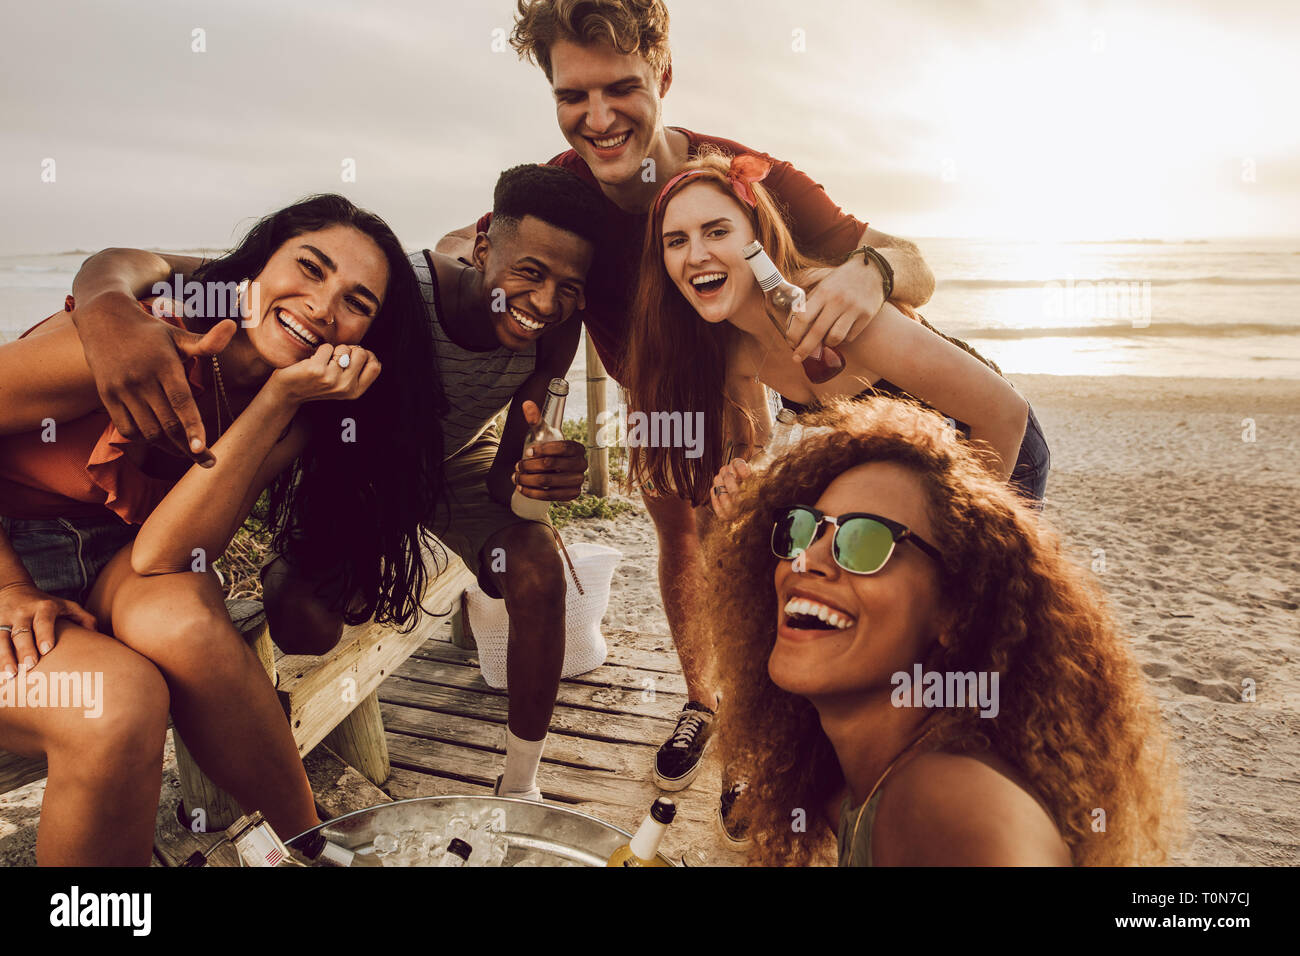 Giovane donna parlando selfie con diversi gruppi di amici in spiaggia. Multirazziale giovani uomini e giovani donne che posano per una selfie. Foto Stock